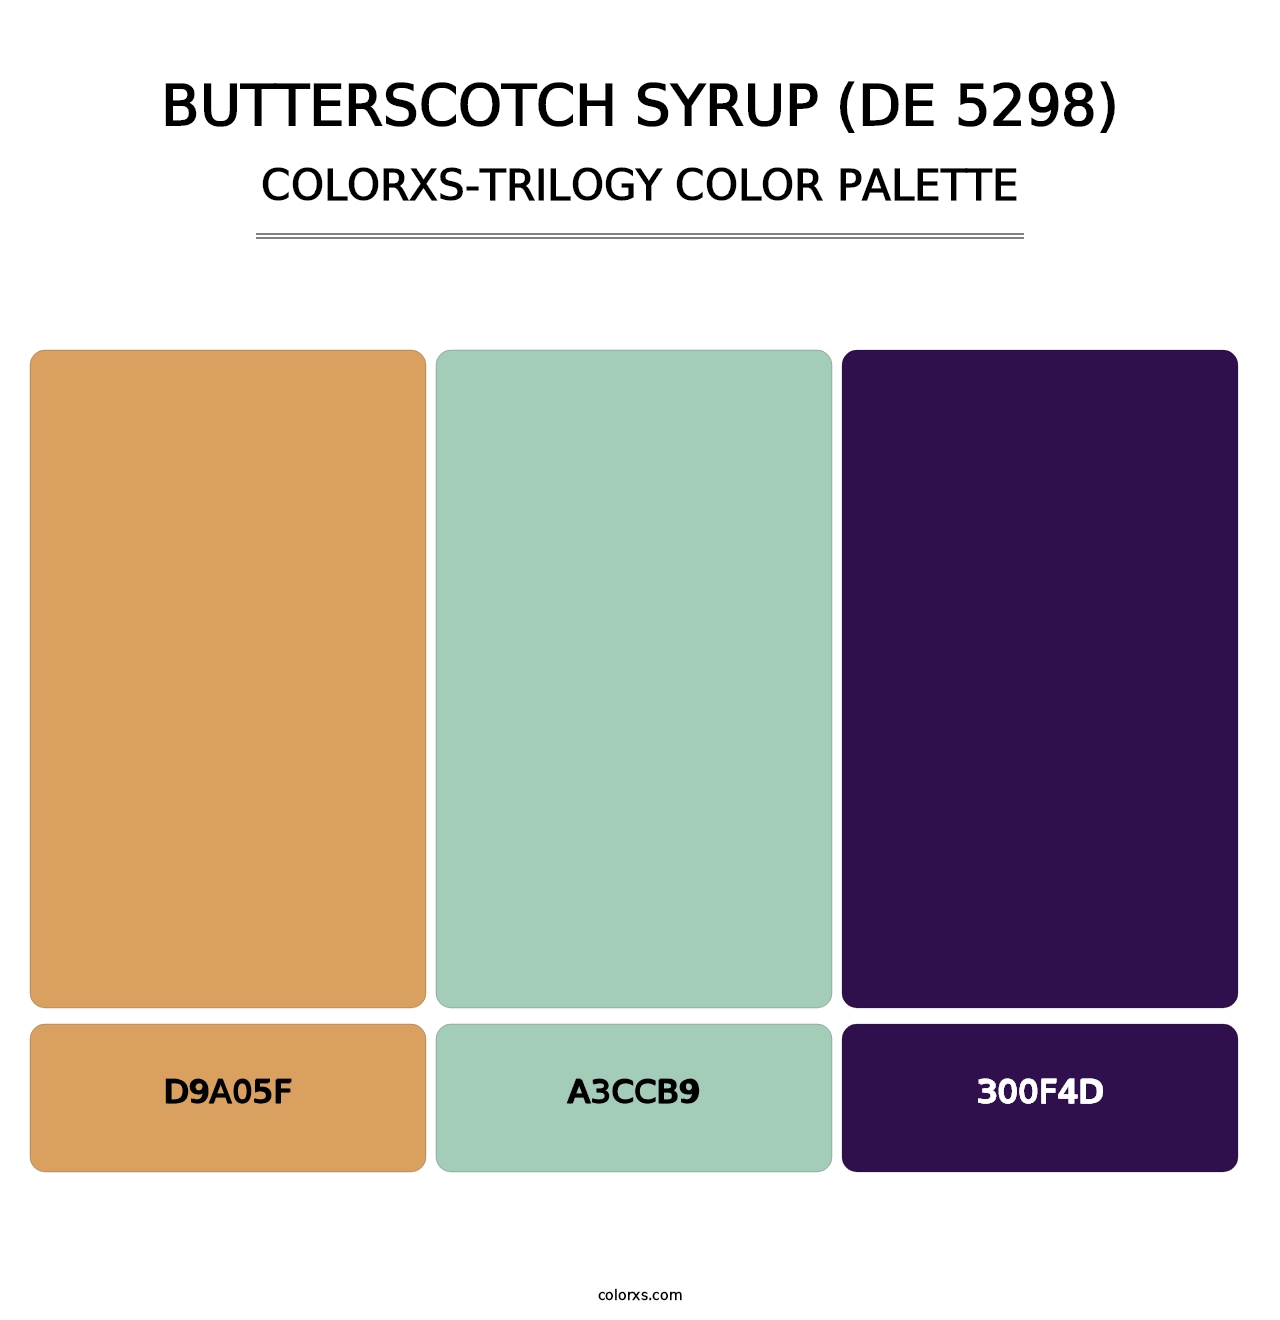 Butterscotch Syrup (DE 5298) - Colorxs Trilogy Palette